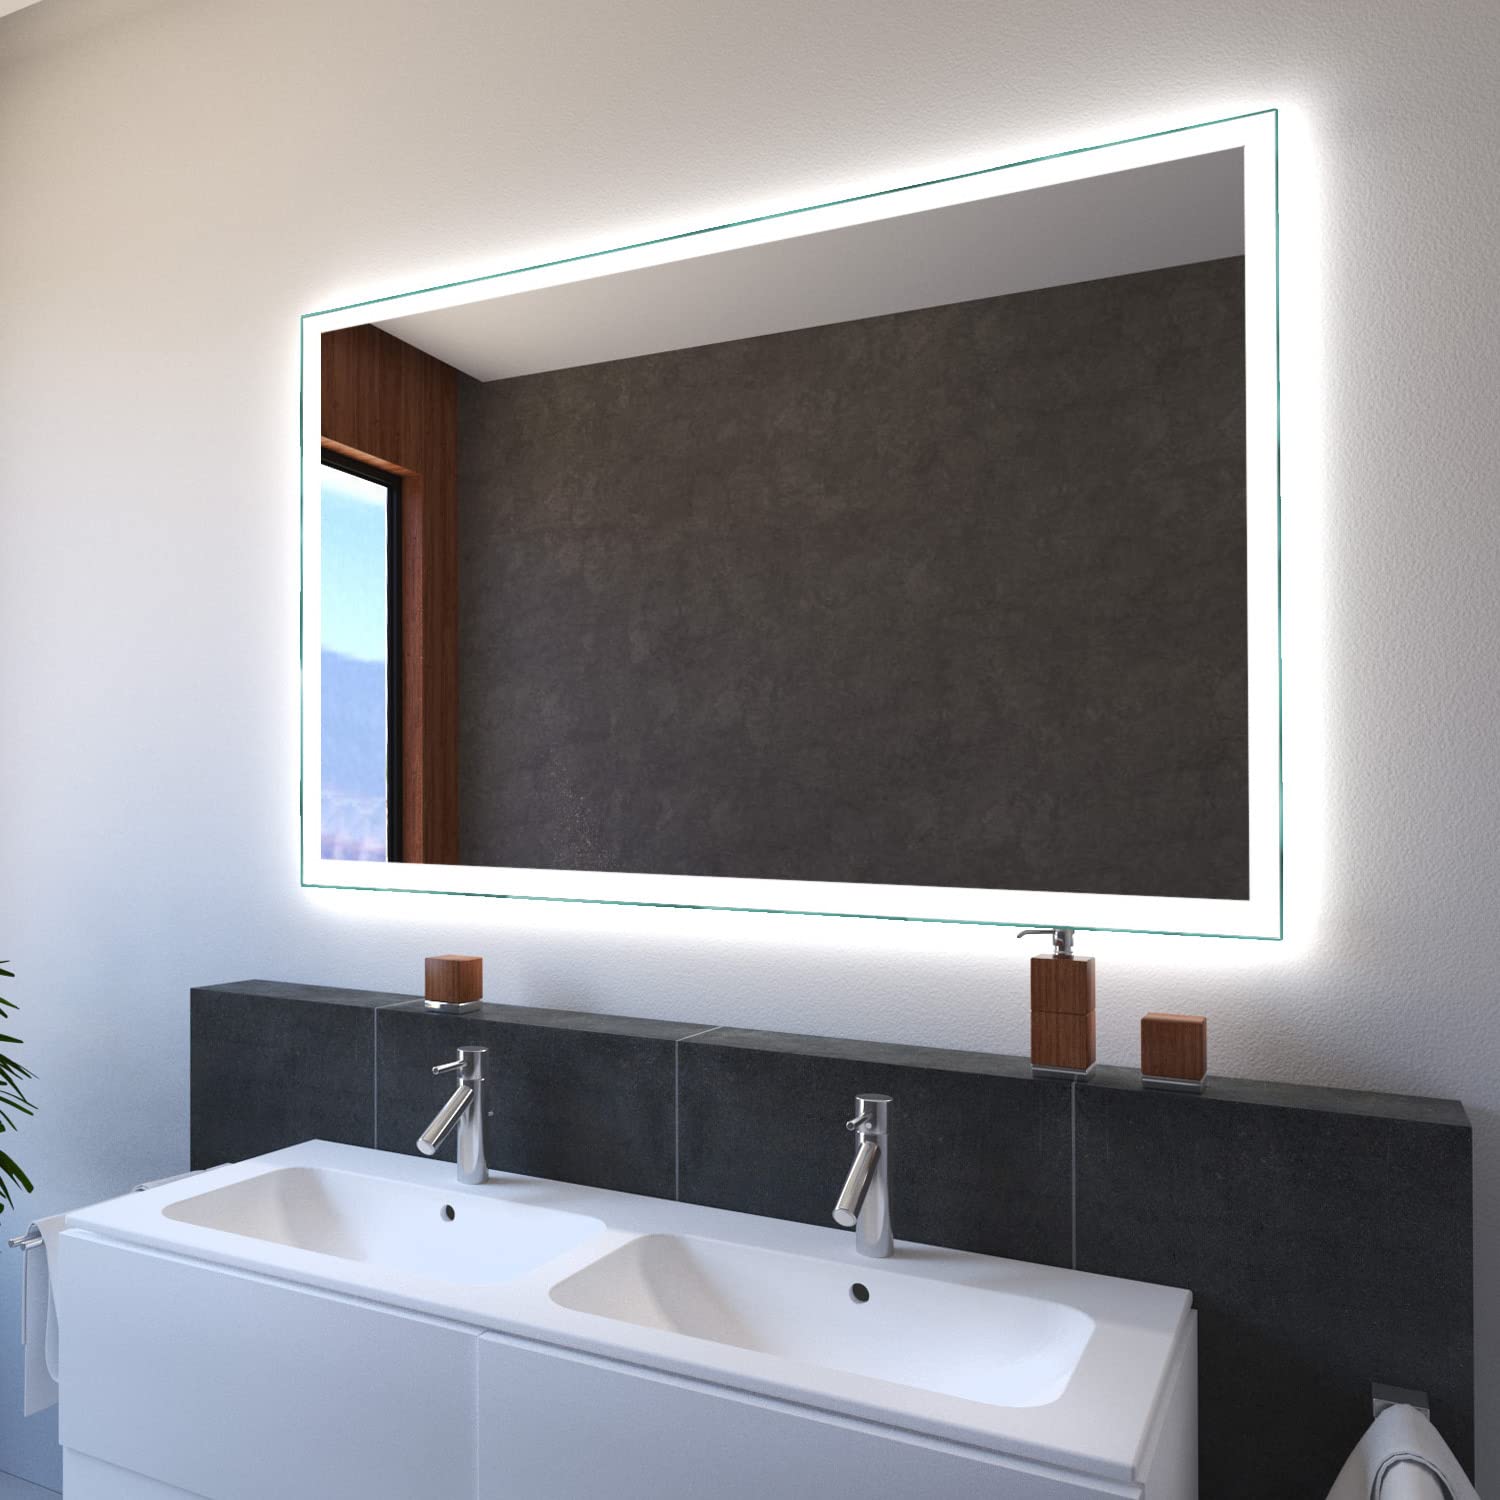 SARAR Wandspiegel mit LED-Beleuchtung 150x80cm Made in Germany Designo MA4110 Badspiegel Spiegel mit Beleuchtung Badezimmerspiegel nach-auf Maß